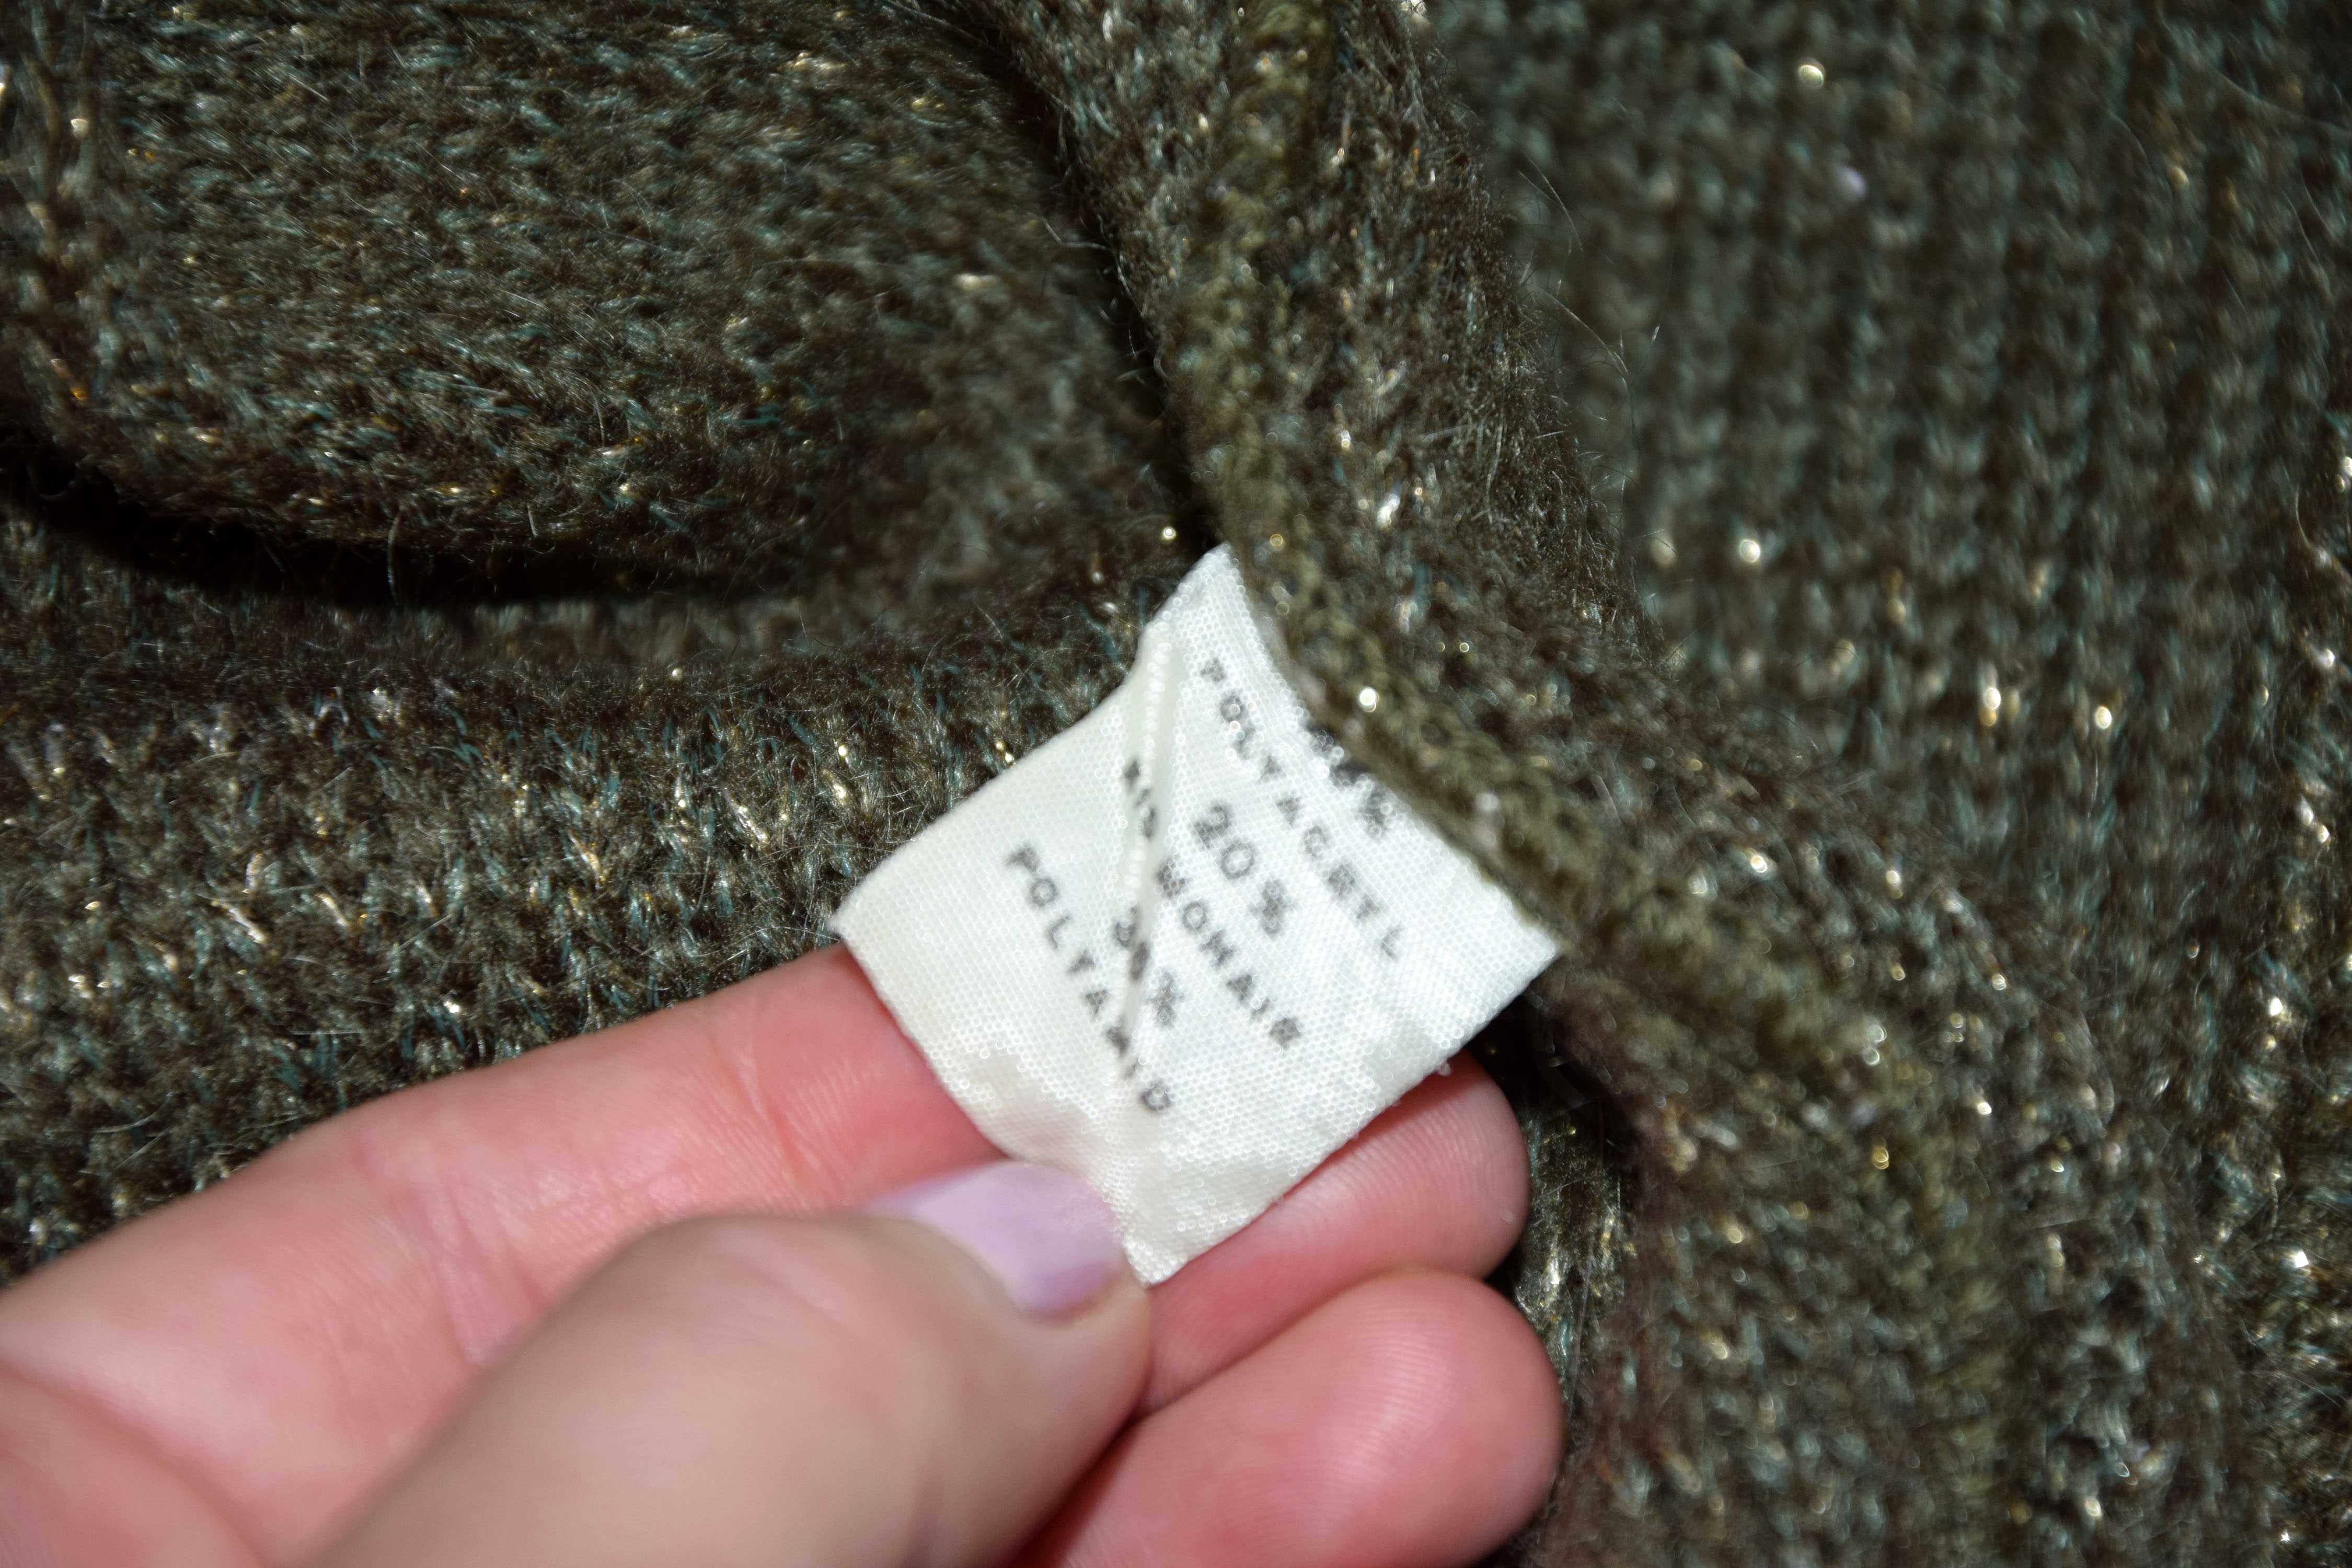 Stylowy sweterek 134/140khaki złota nitka rozpinany vintage